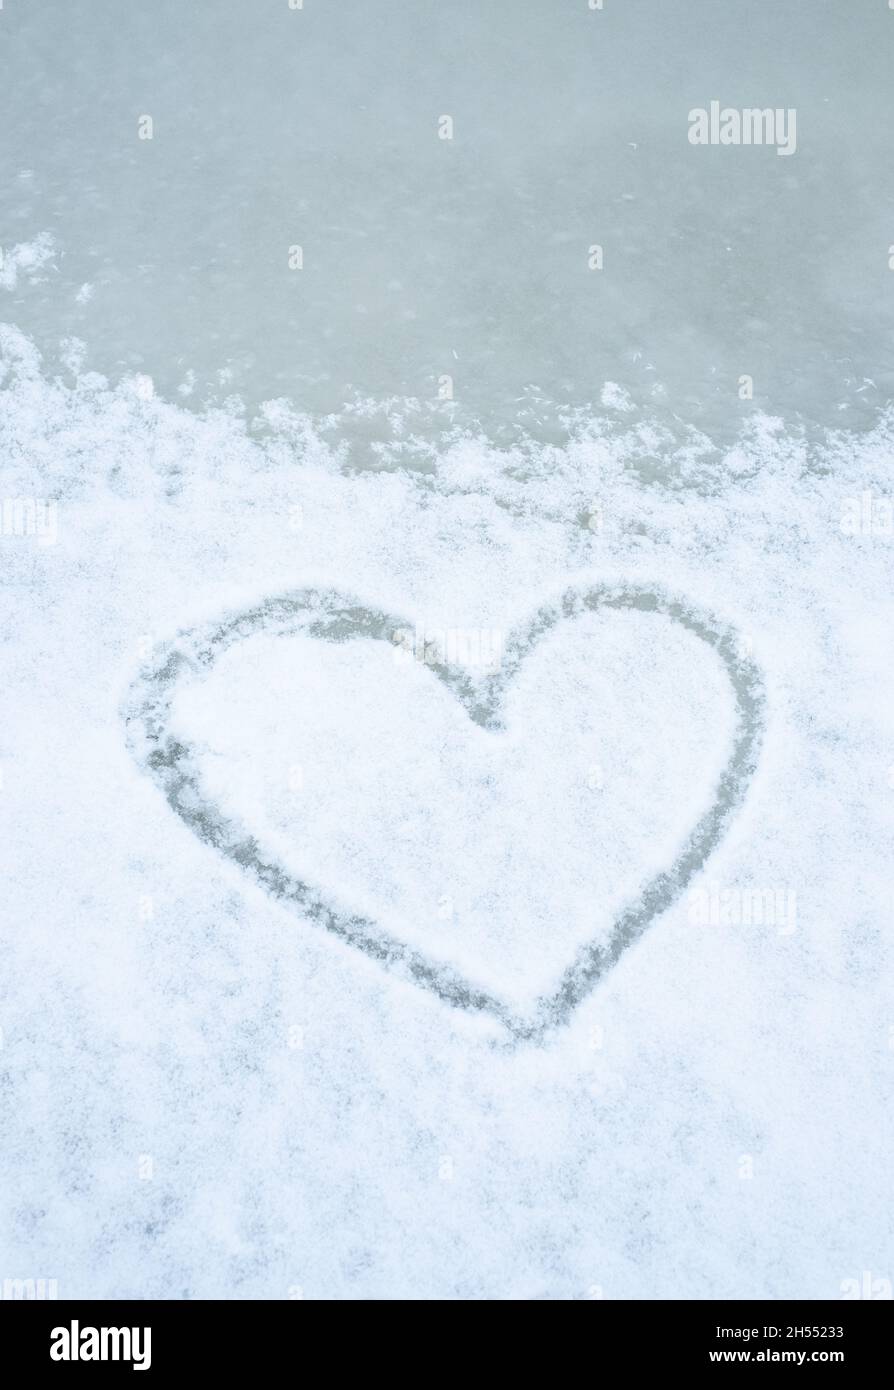 Ami la stagione invernale. La forma del cuore è imbevita di neve su ghiaccio. Foto Stock